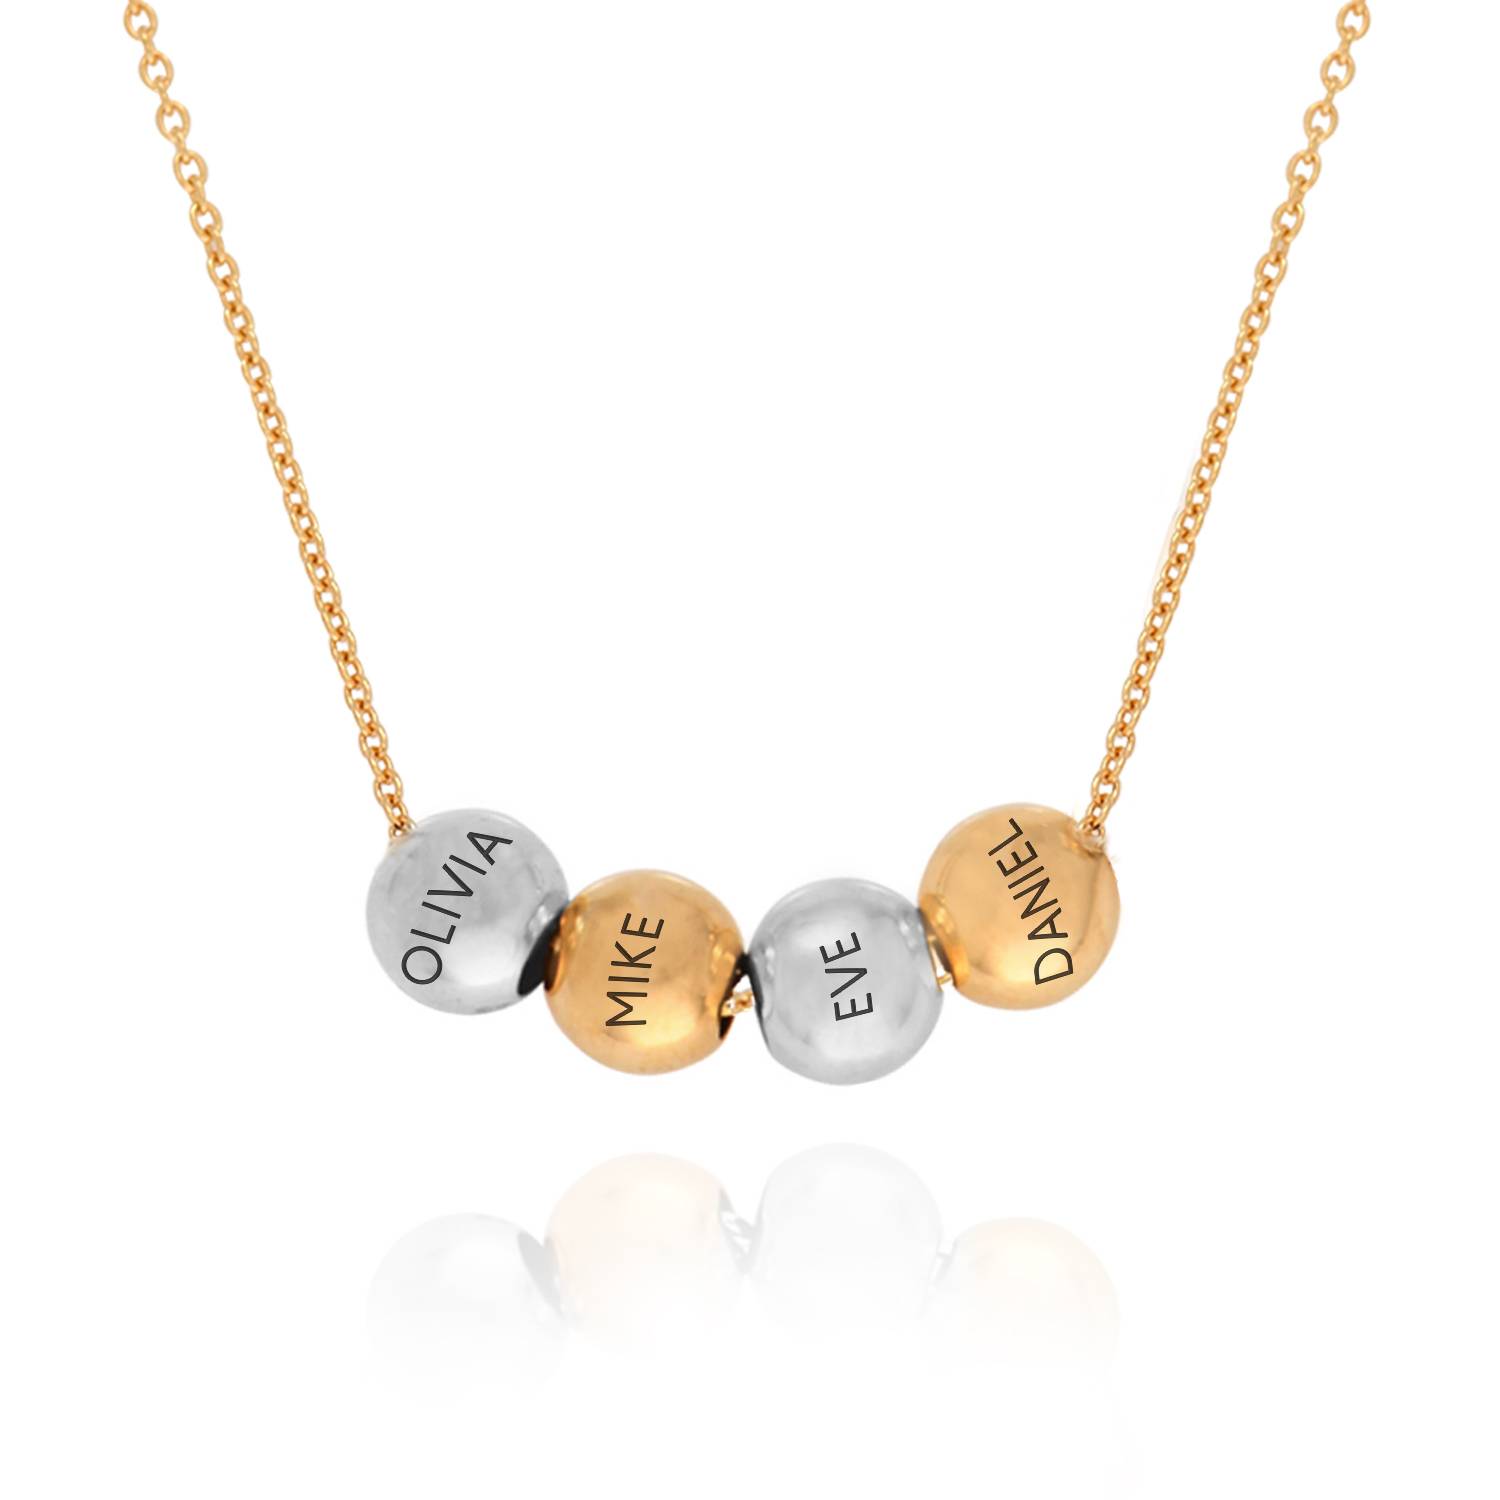 Blandede metaller balance charme halskæde med 18K guldbelægning kæde-4 produkt billede